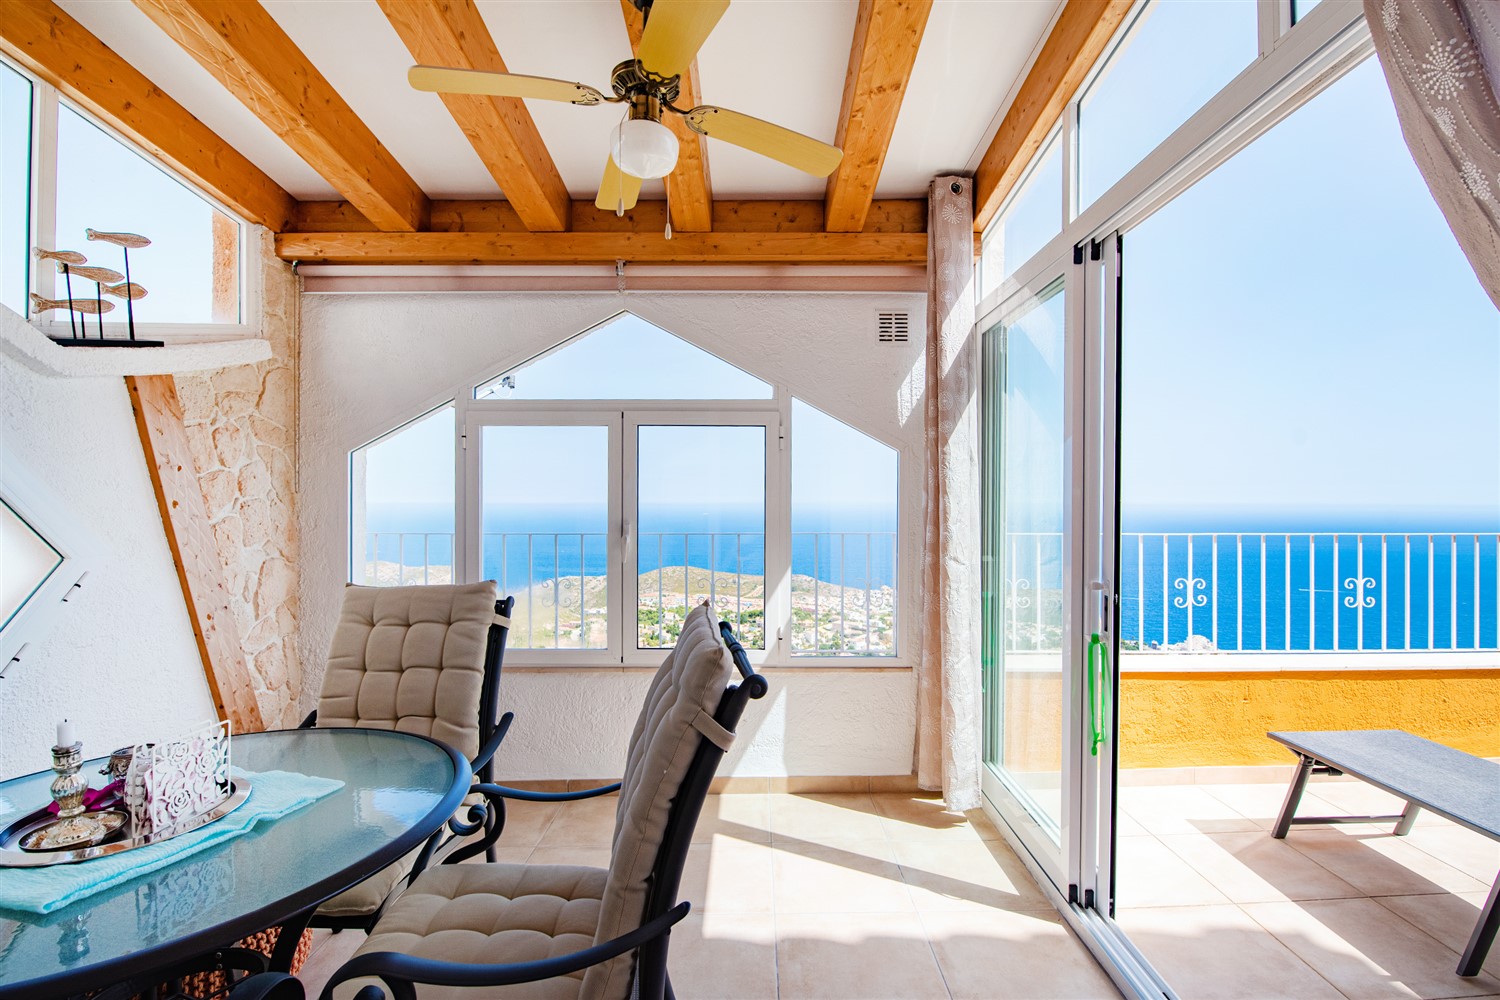 En venta apartamento con excelentes vistas al mar, aire acondicionado, terraza y piscina comunitaria